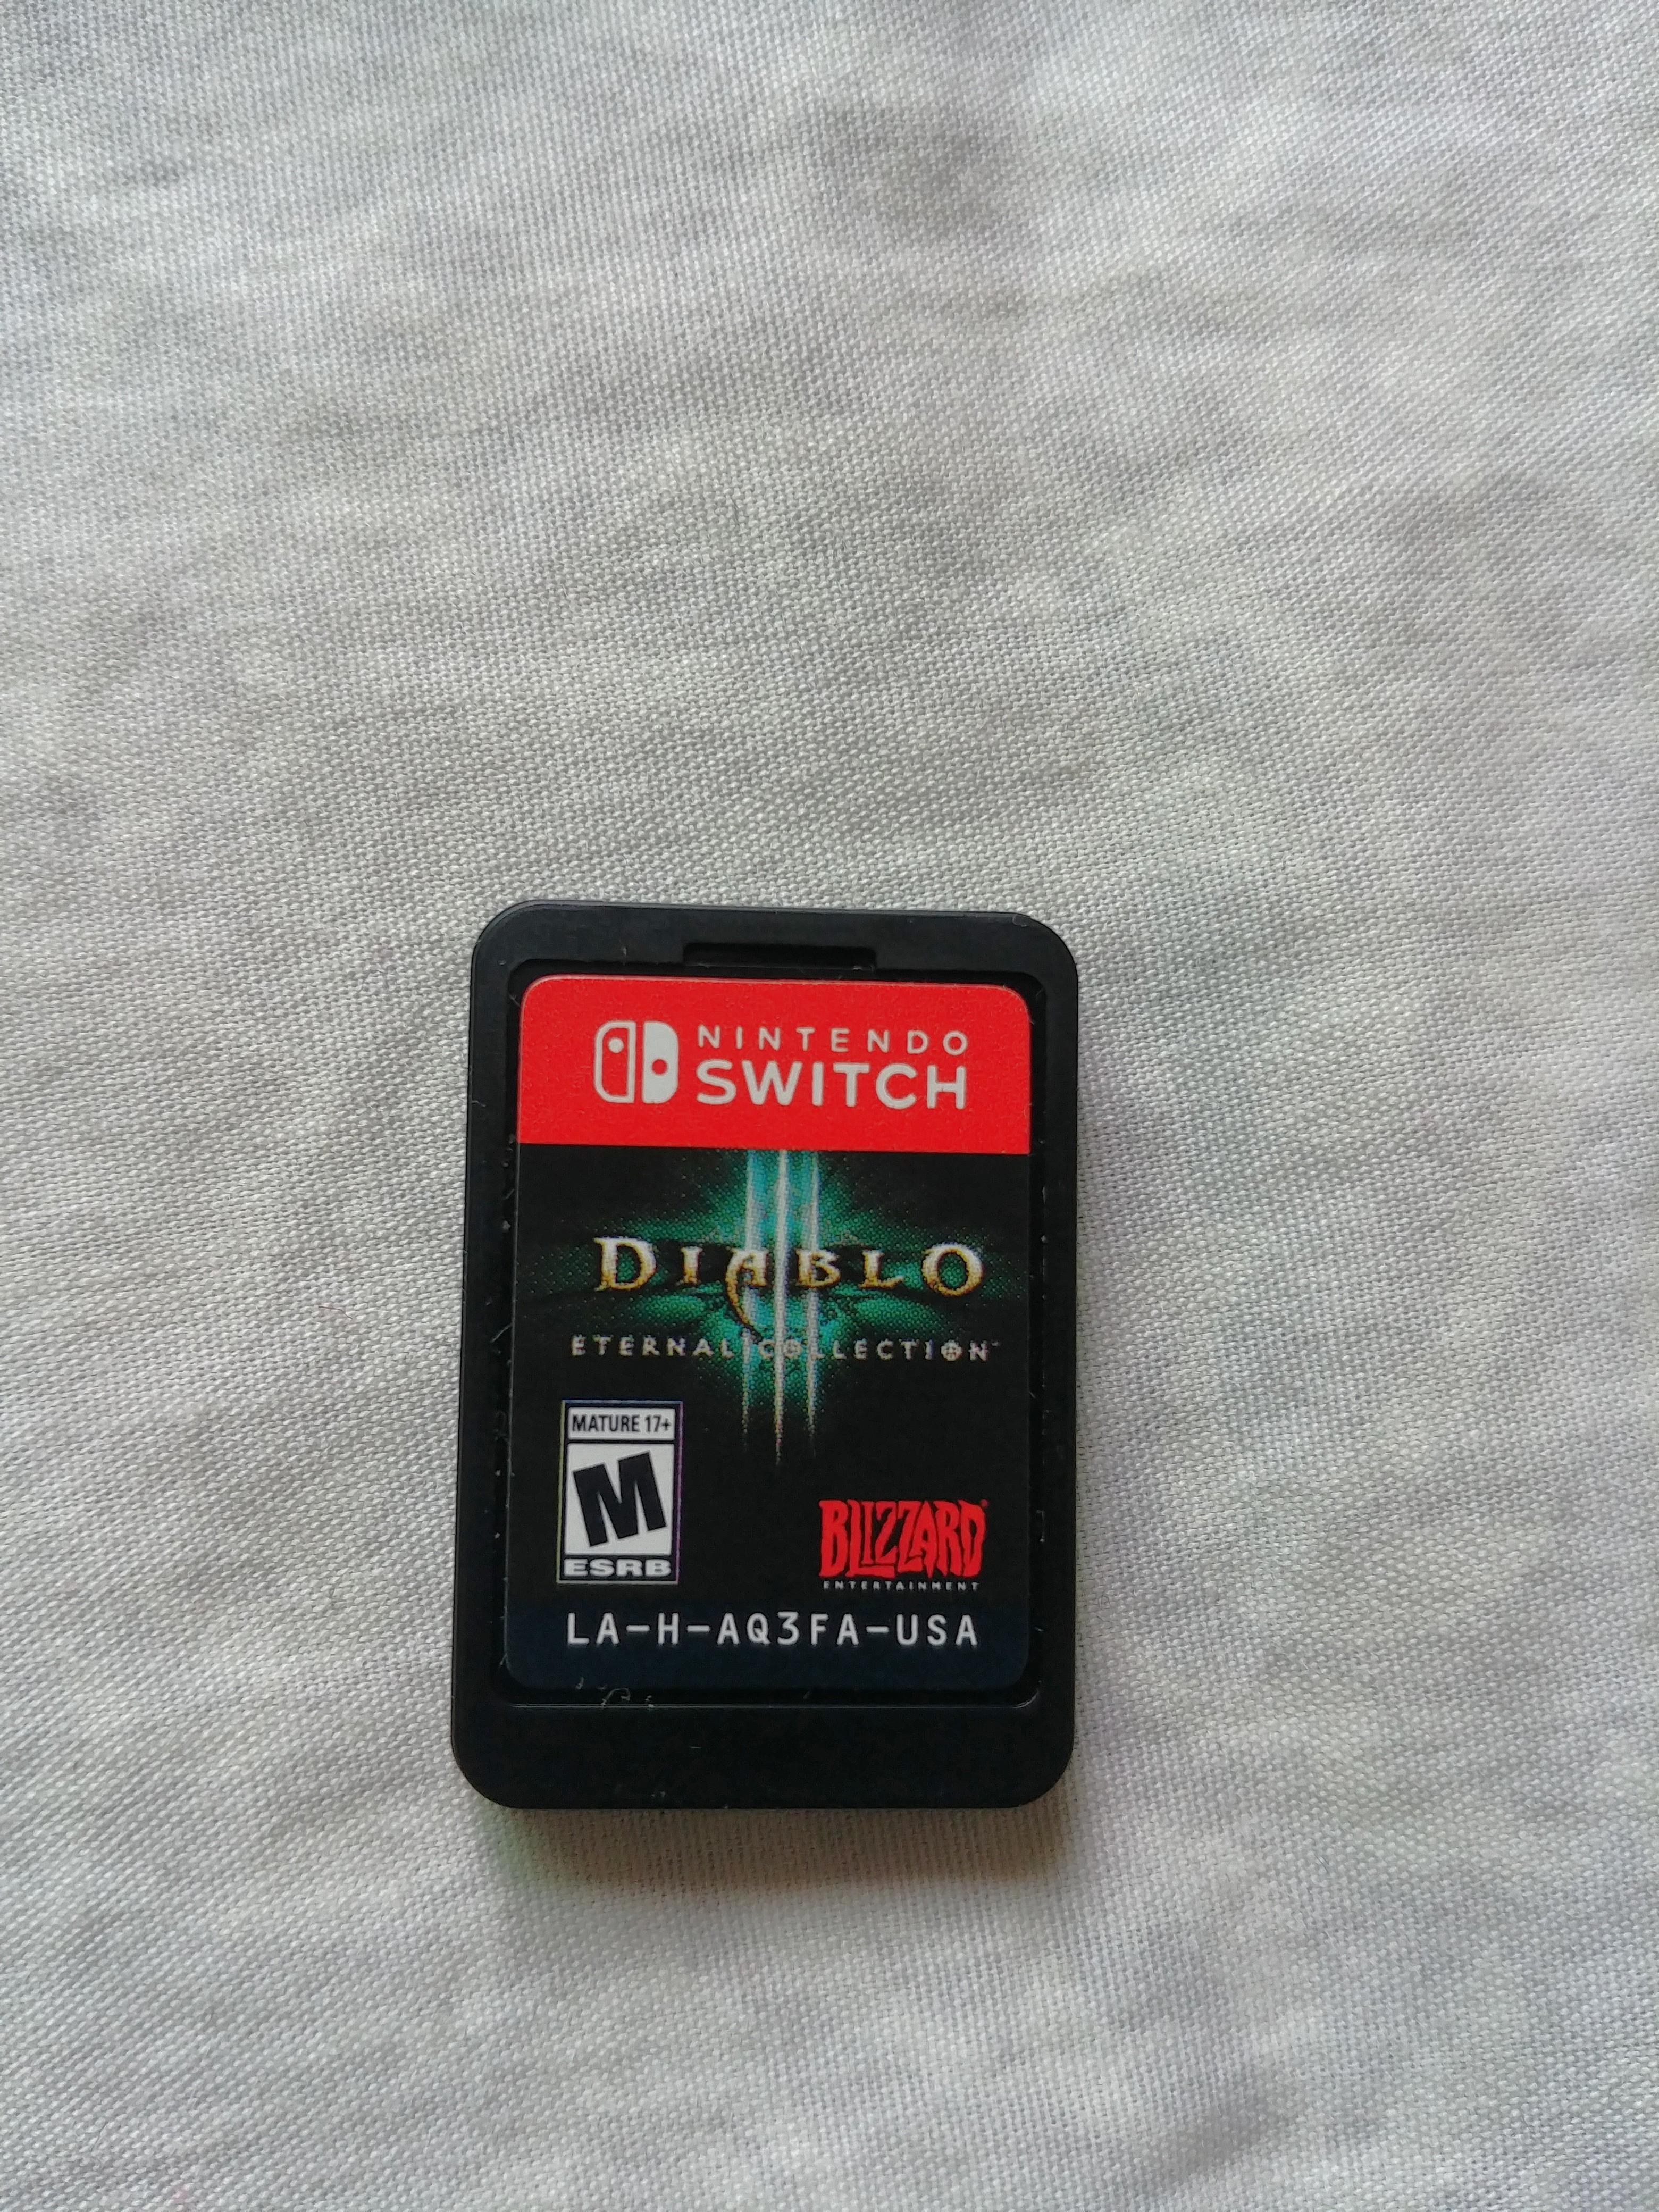 diablo 3 sale switch